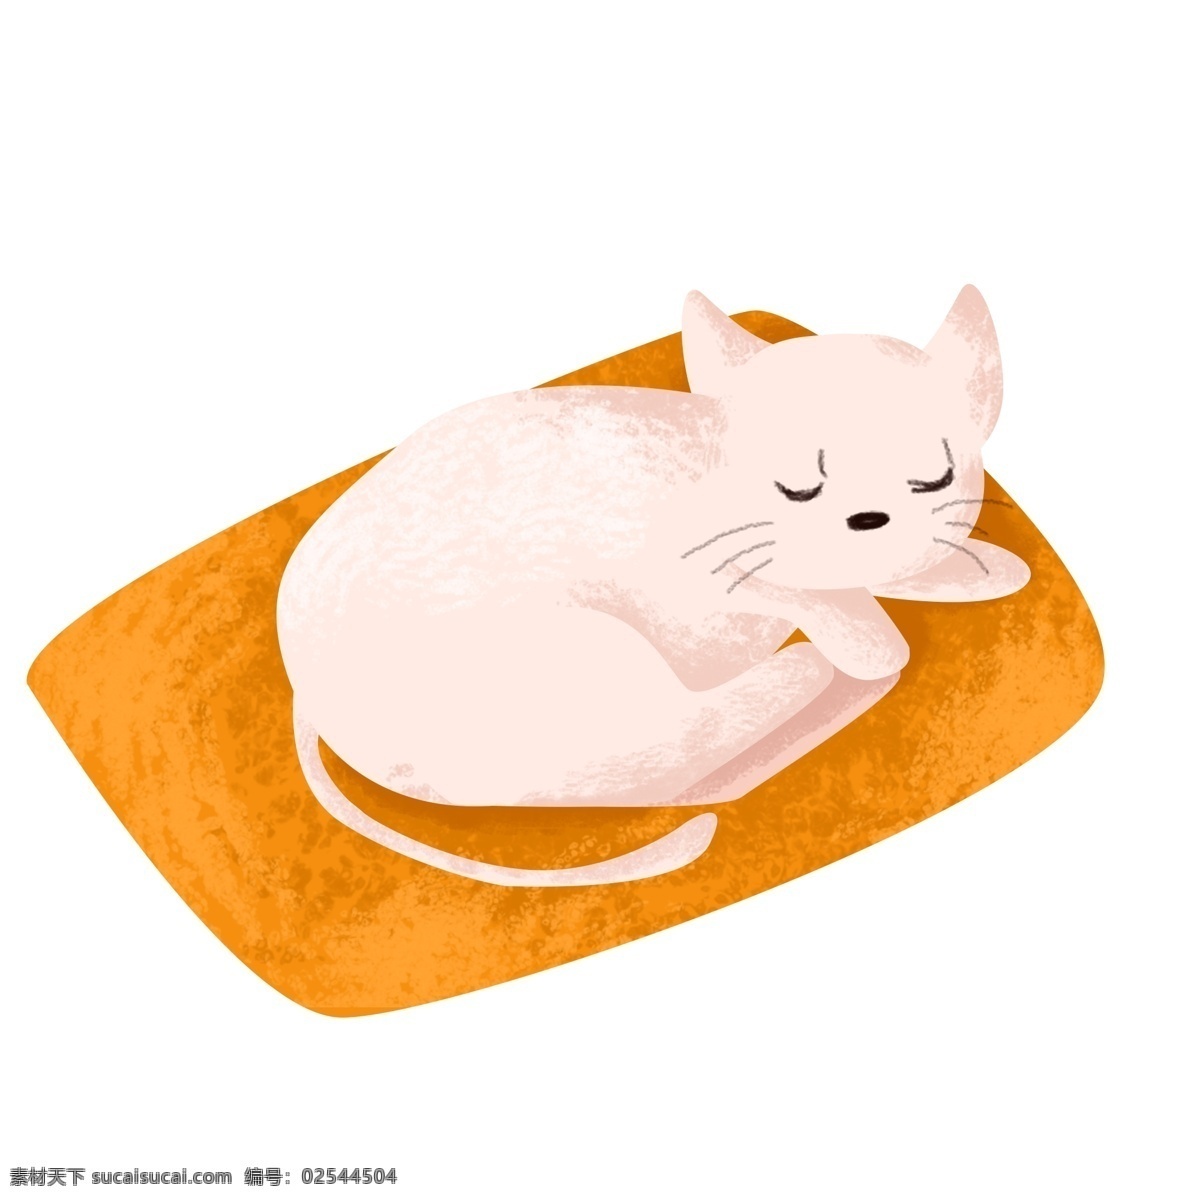 手绘 卡通 黄色 垫子 上 睡觉 小白 猫 小白猫 可爱小猫 猫咪 午休 黄色垫子